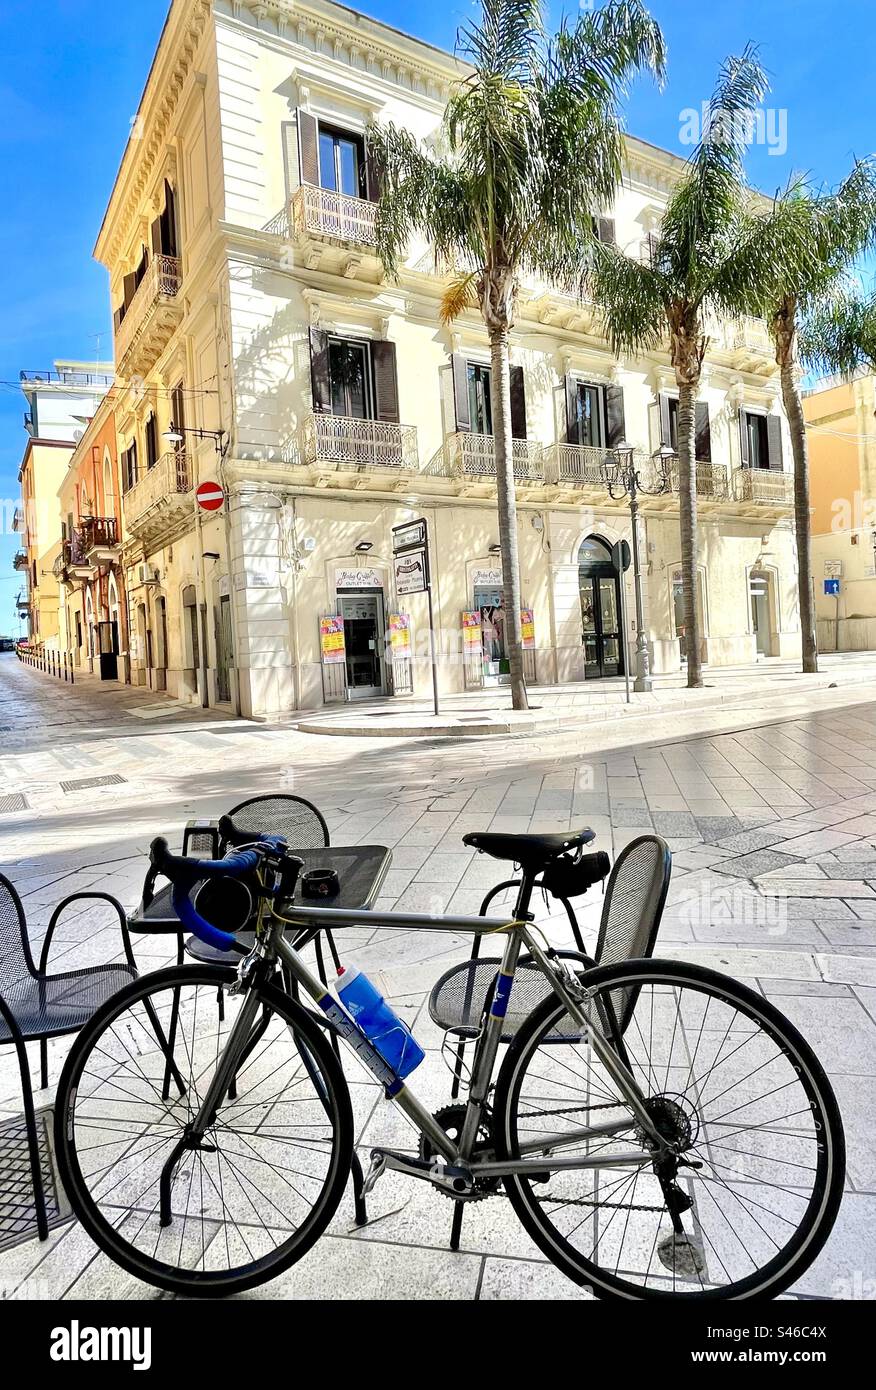 Rennrad aus Titan gegenüber von einem Boutique-Hotel in Brindisi Apullia  Italien Stockfotografie - Alamy